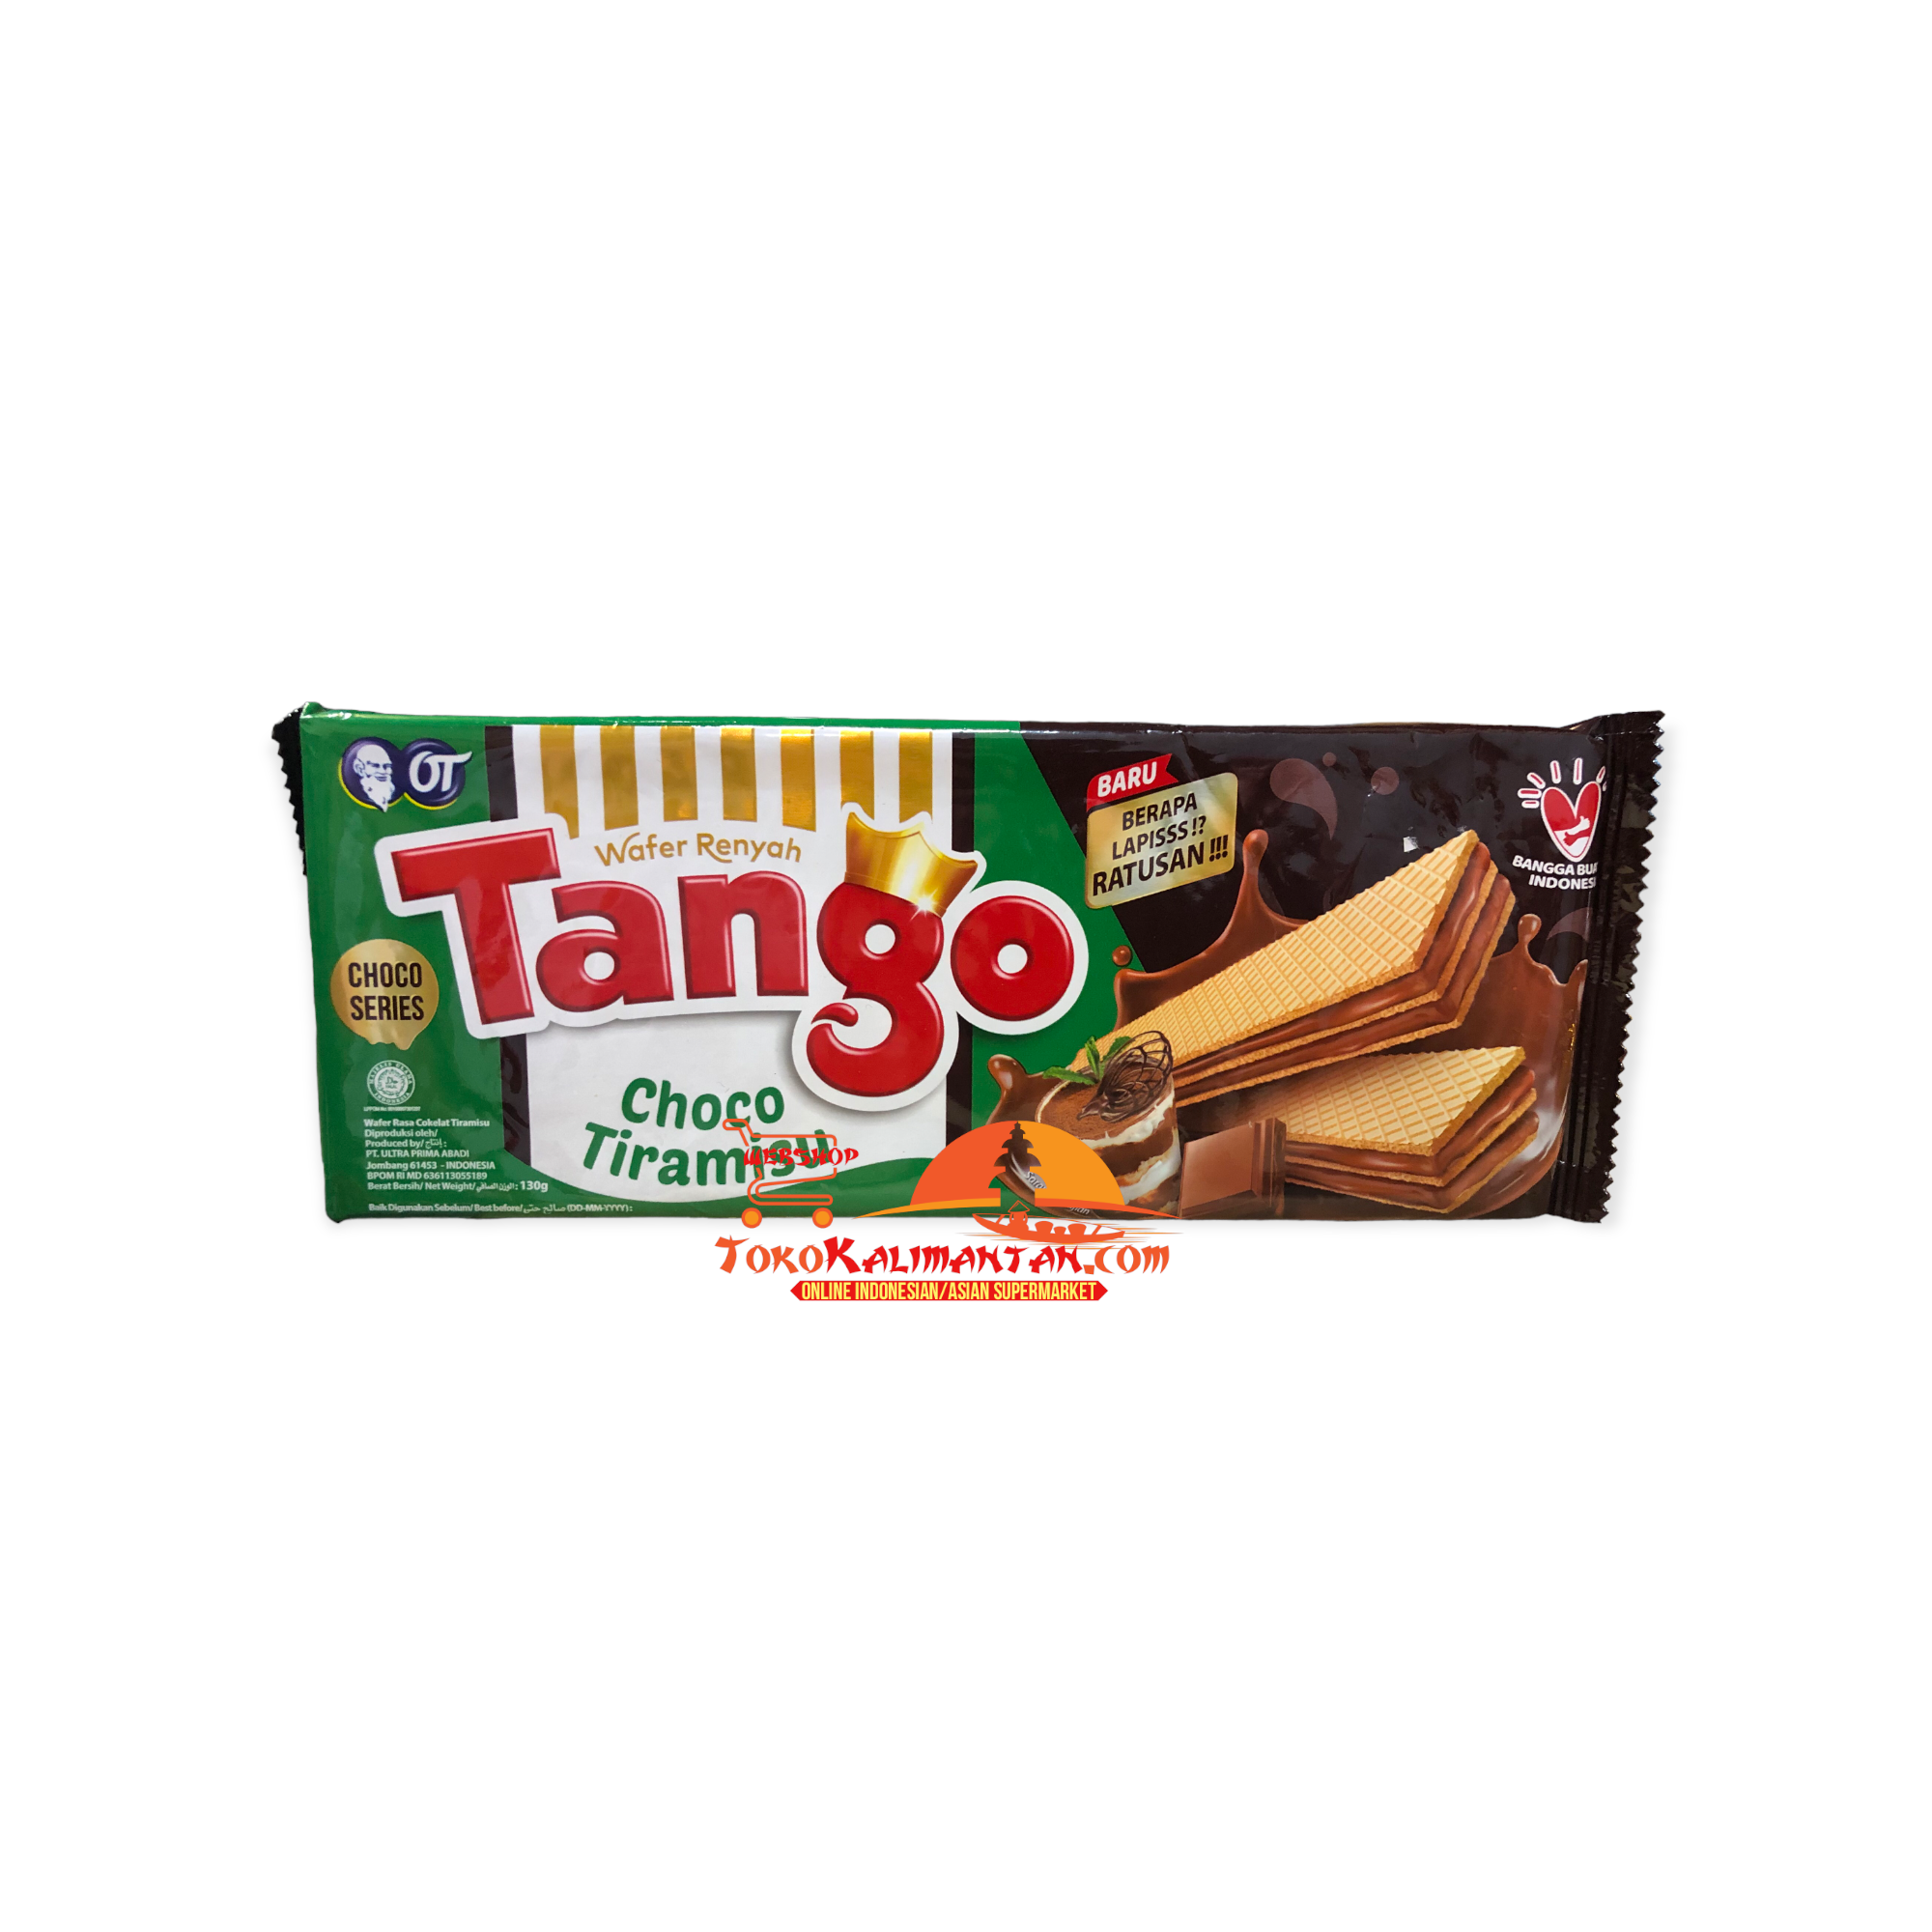 Tango choco tiramisu Tango Choco Tiramisu - Toko Kalimantan